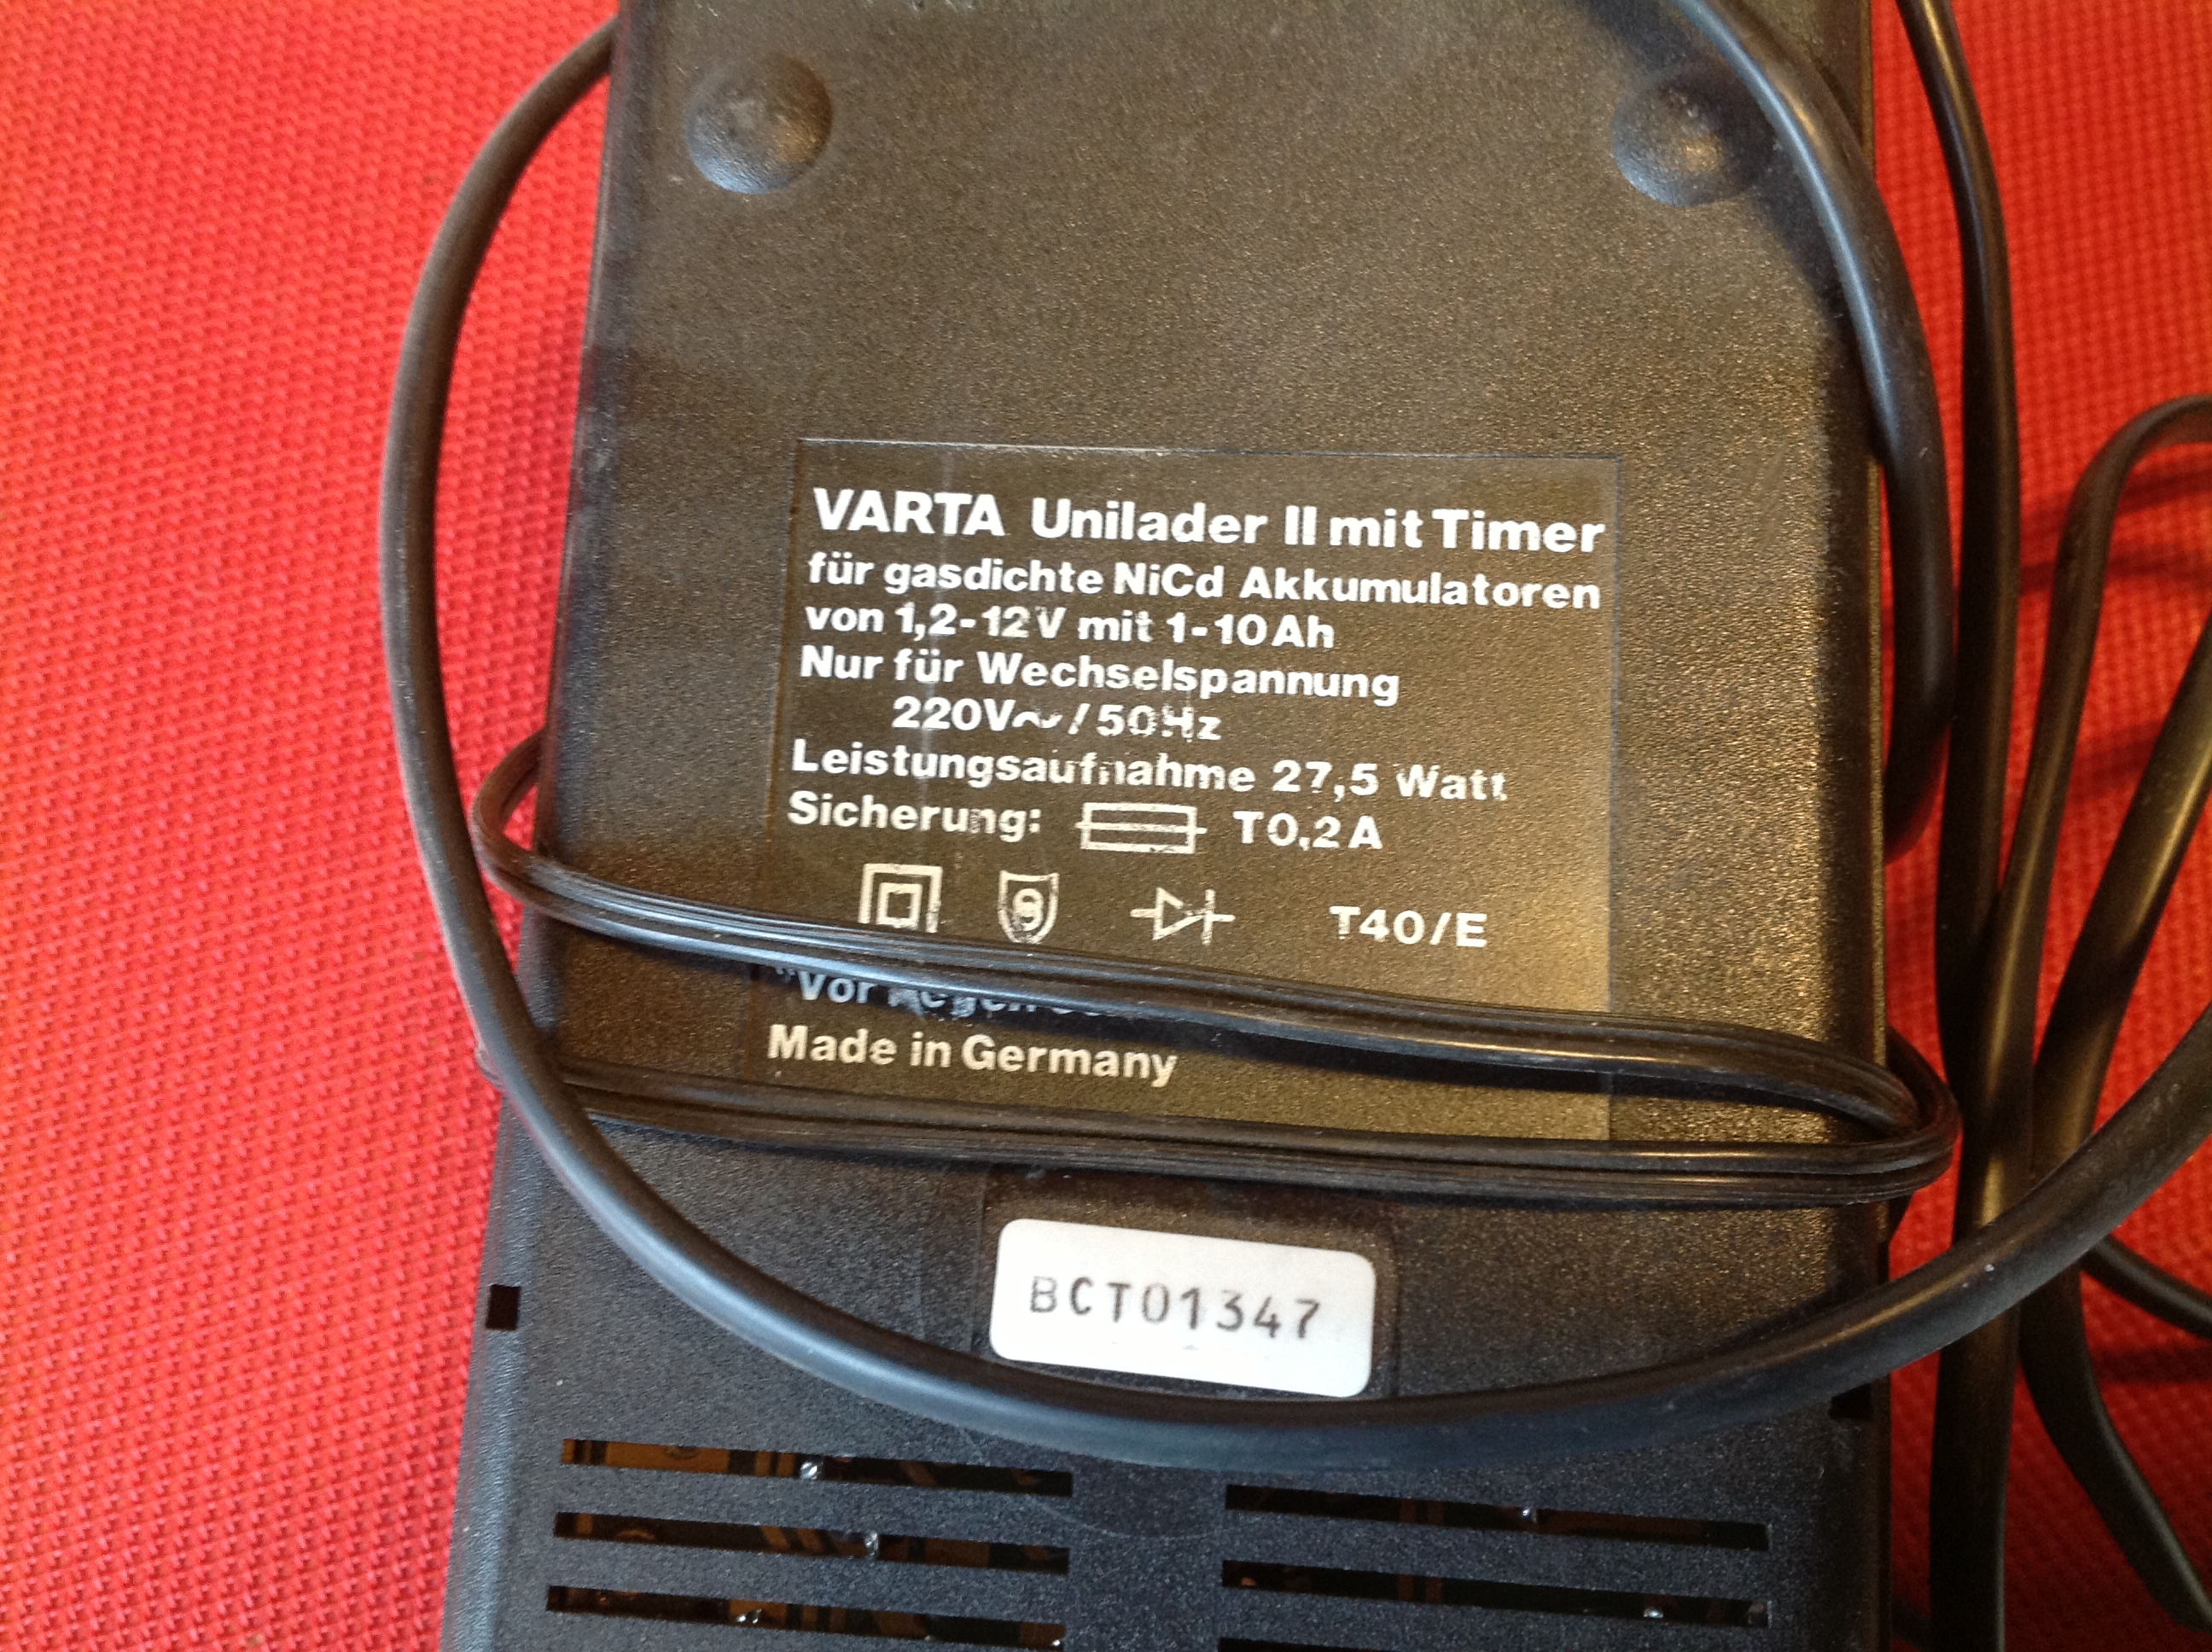 Varta Universal-Ladegerät, Unilader II mit Timer